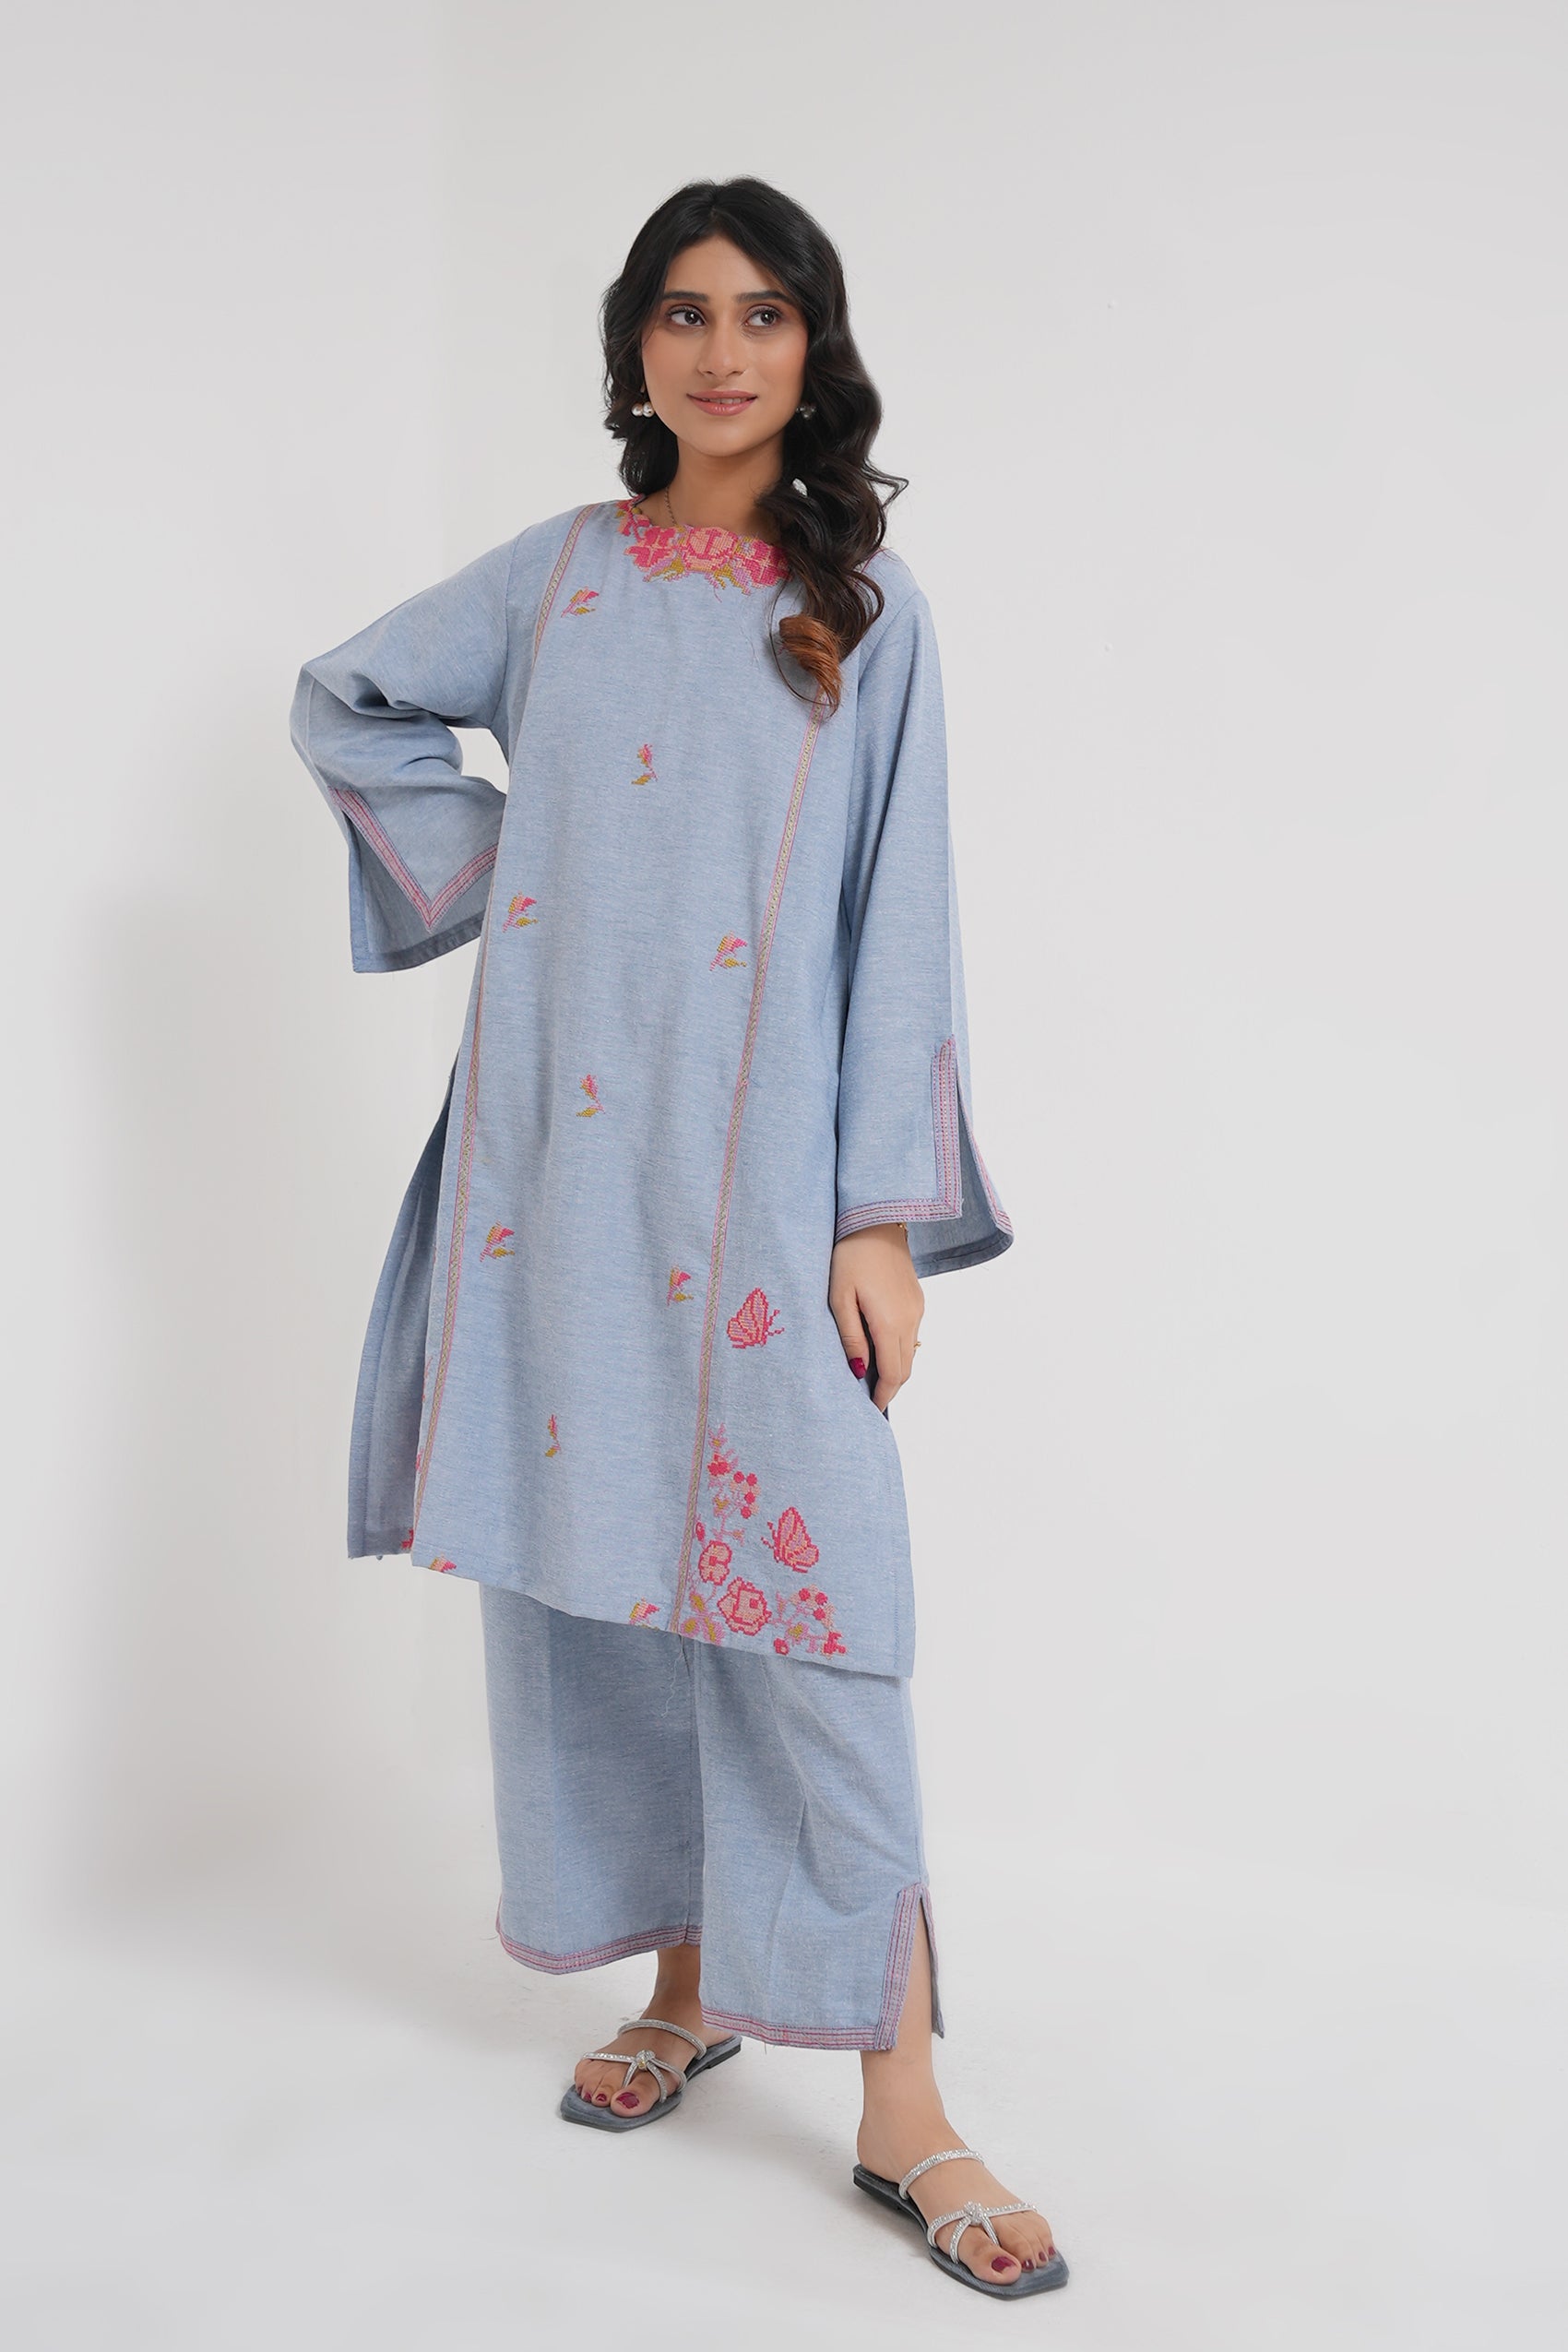 online dress shopping in pakistan